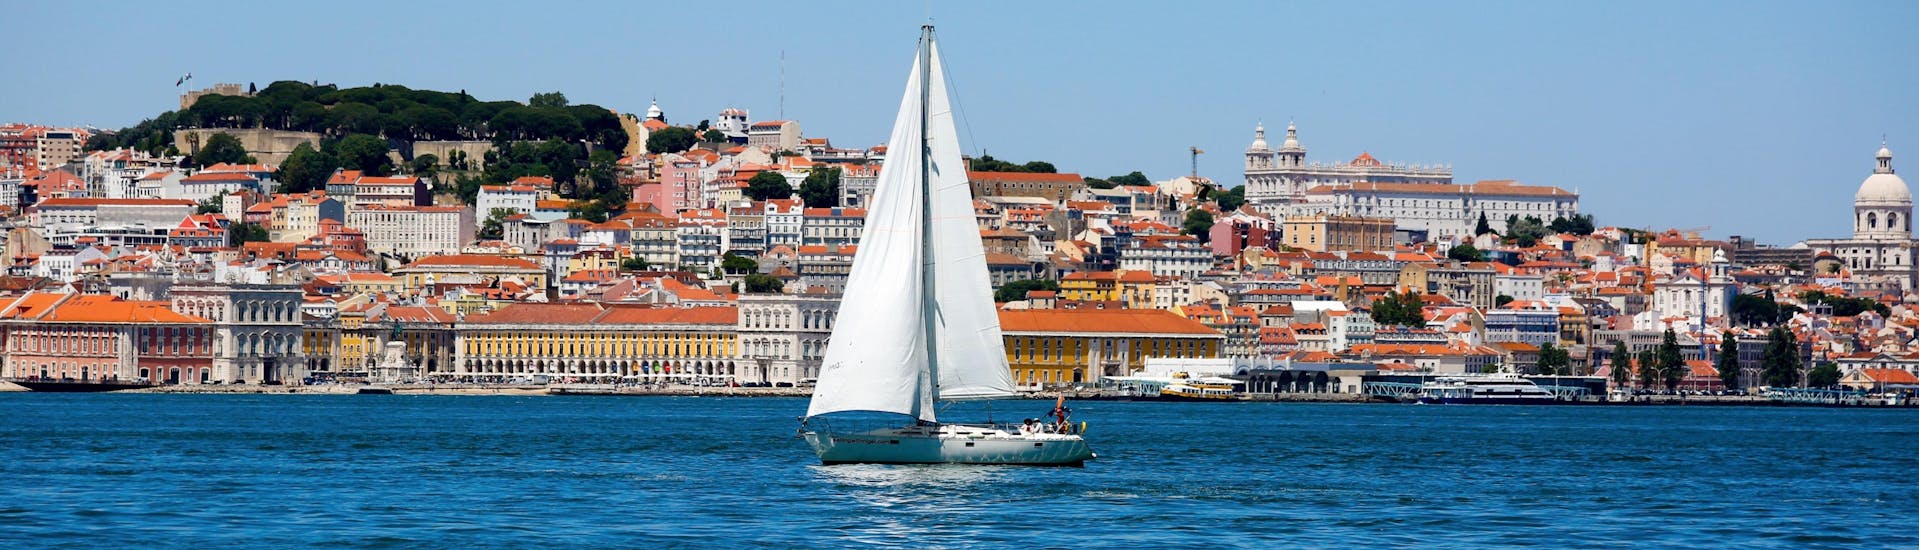 Ein Bild eines Segelboots, das während einer Bootsfahrt in Lissabon auf dem Tejo treibt.